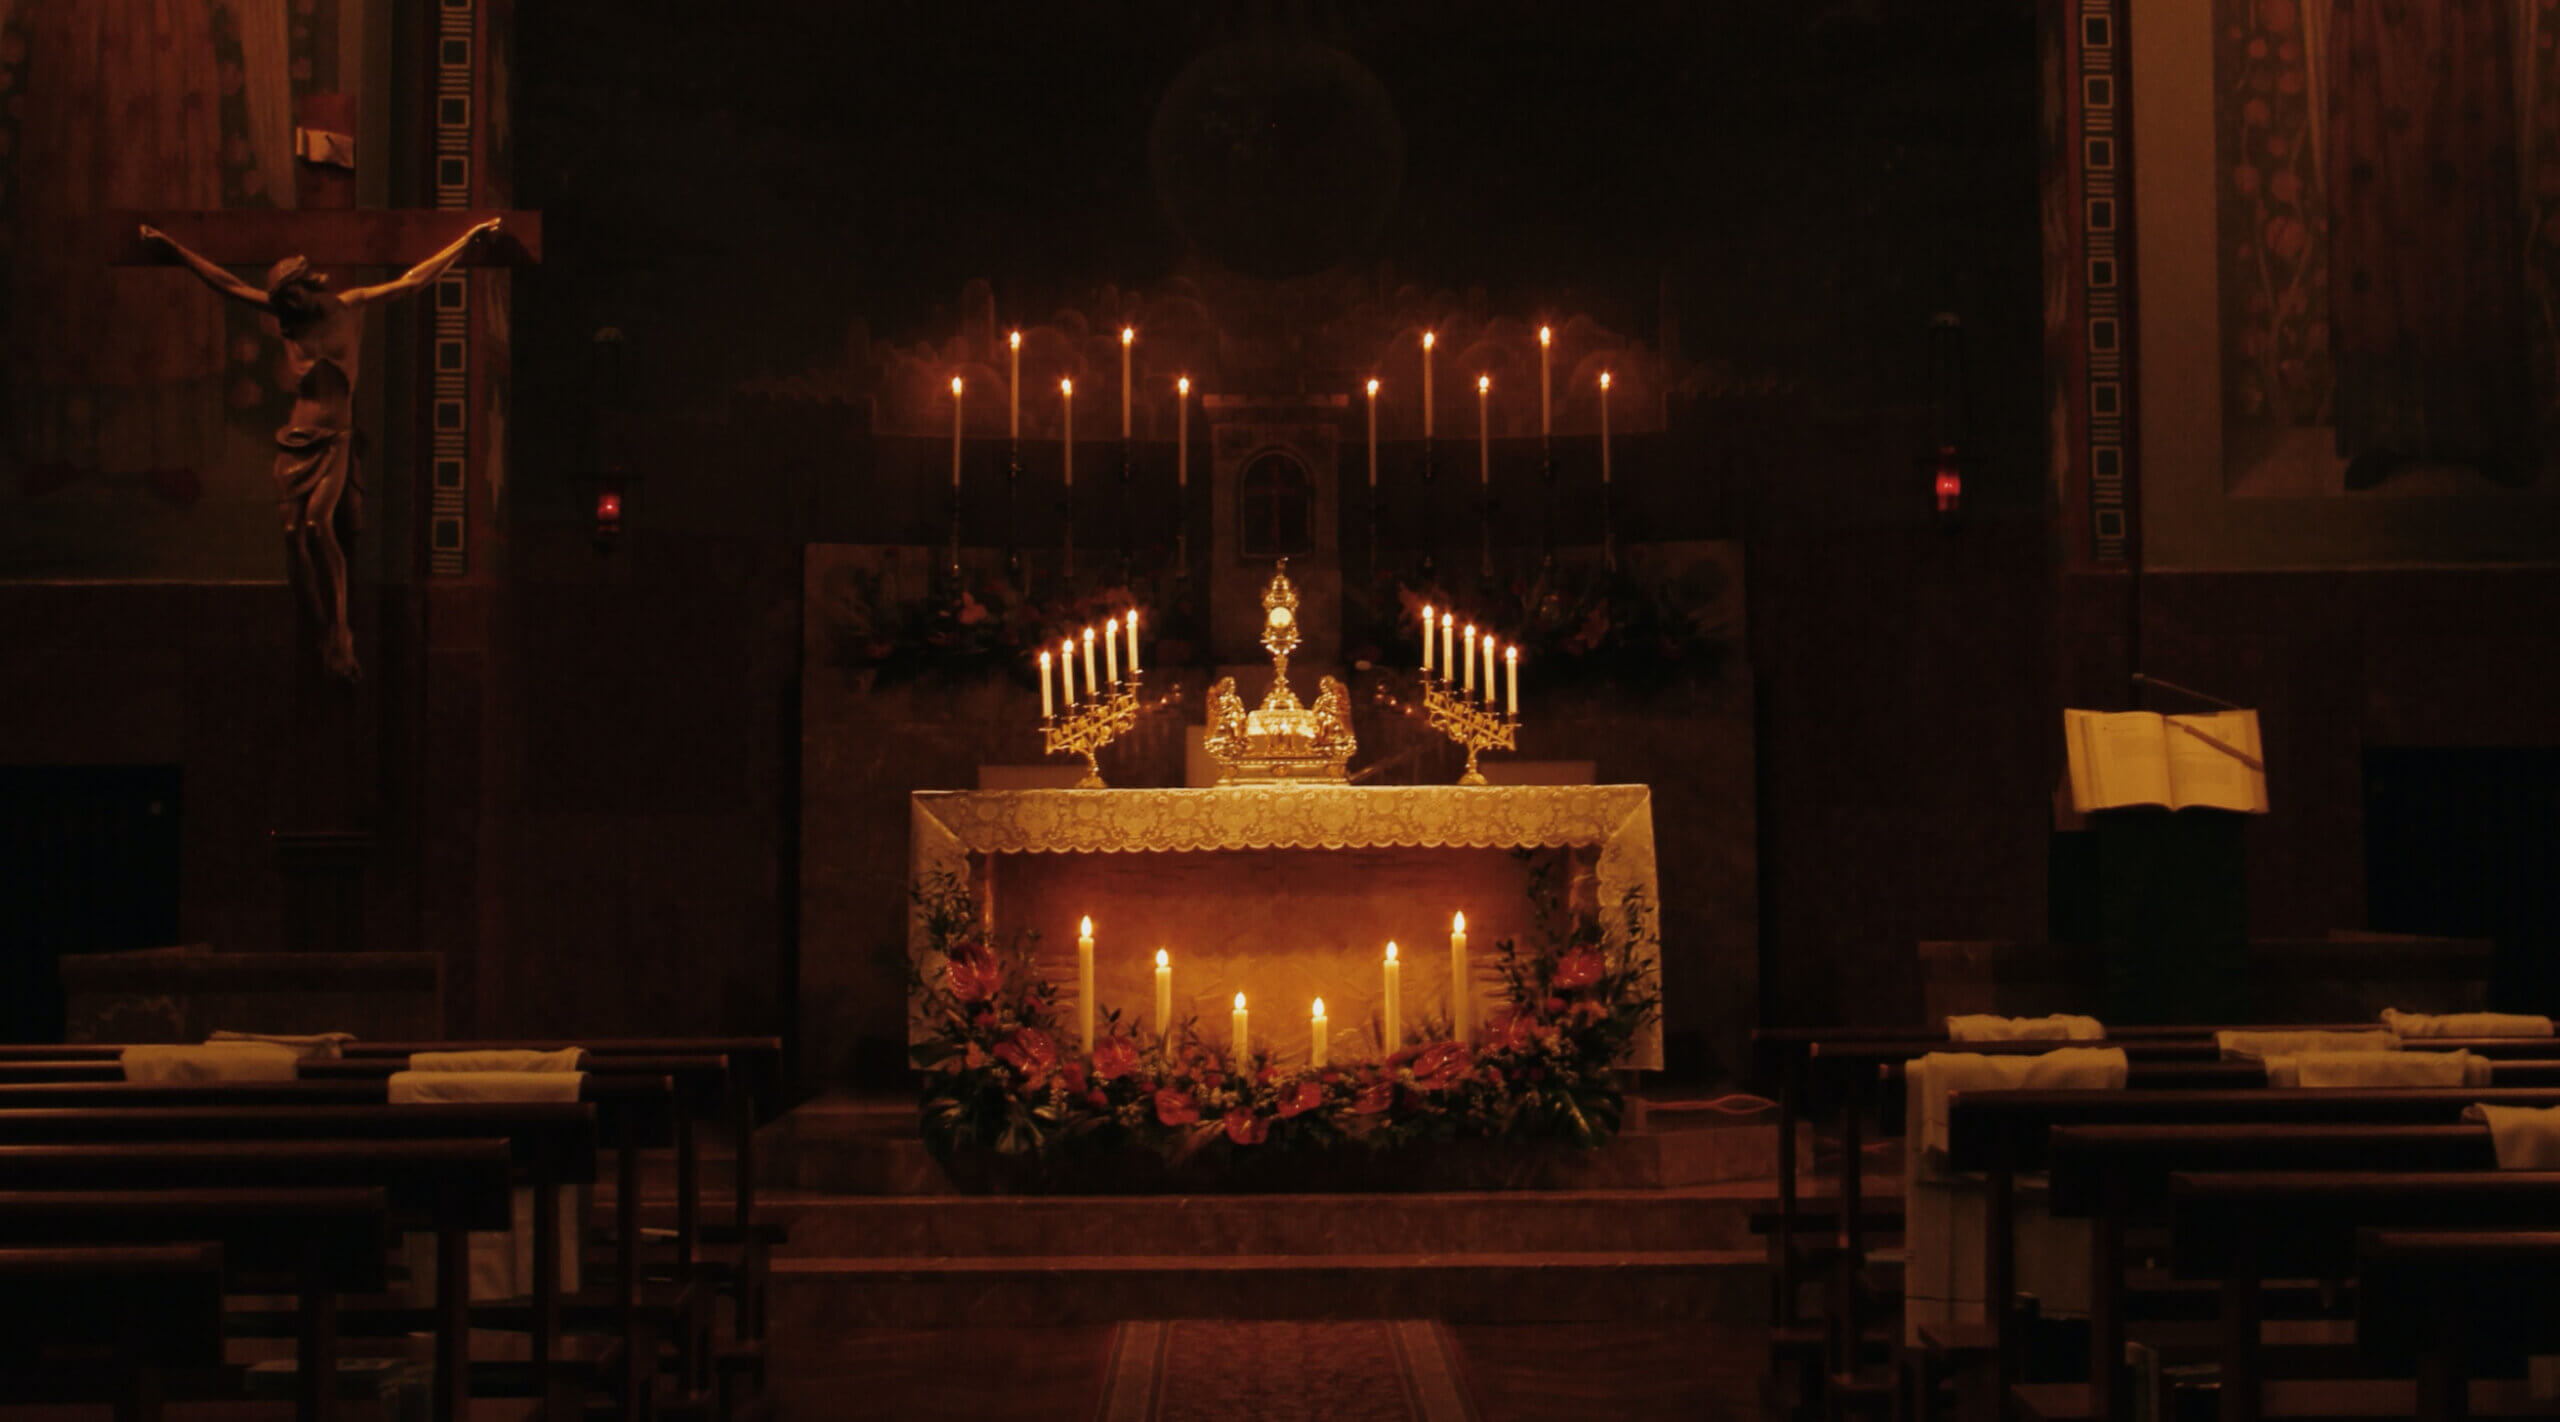 Why Do Catholics Use So Many Candles?